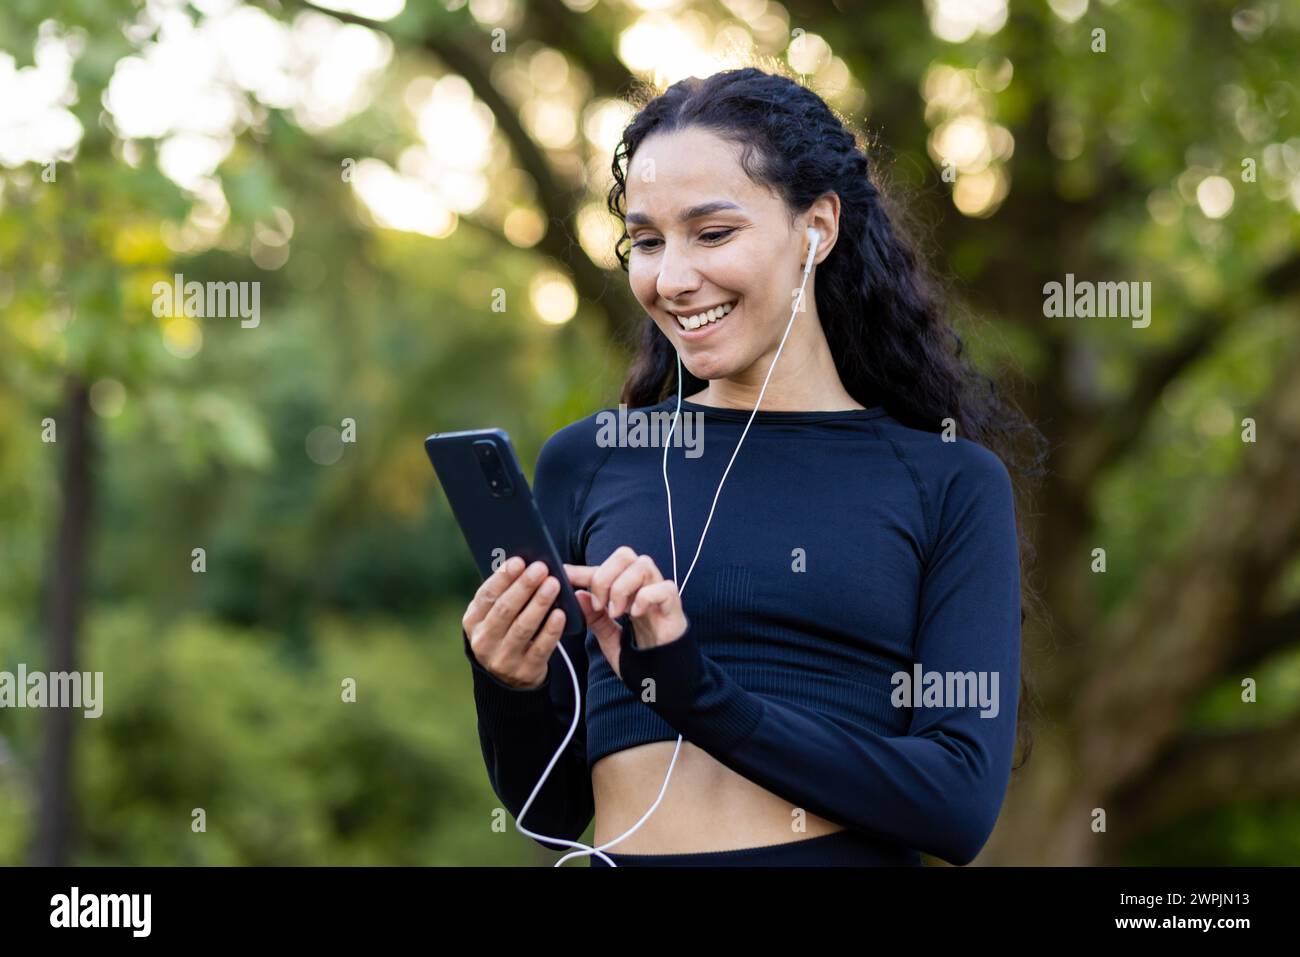 Joyeuse jeune femme active avec des écouteurs souriant tout en tenant un téléphone, profitant d'une pause dans un parc luxuriant. Banque D'Images